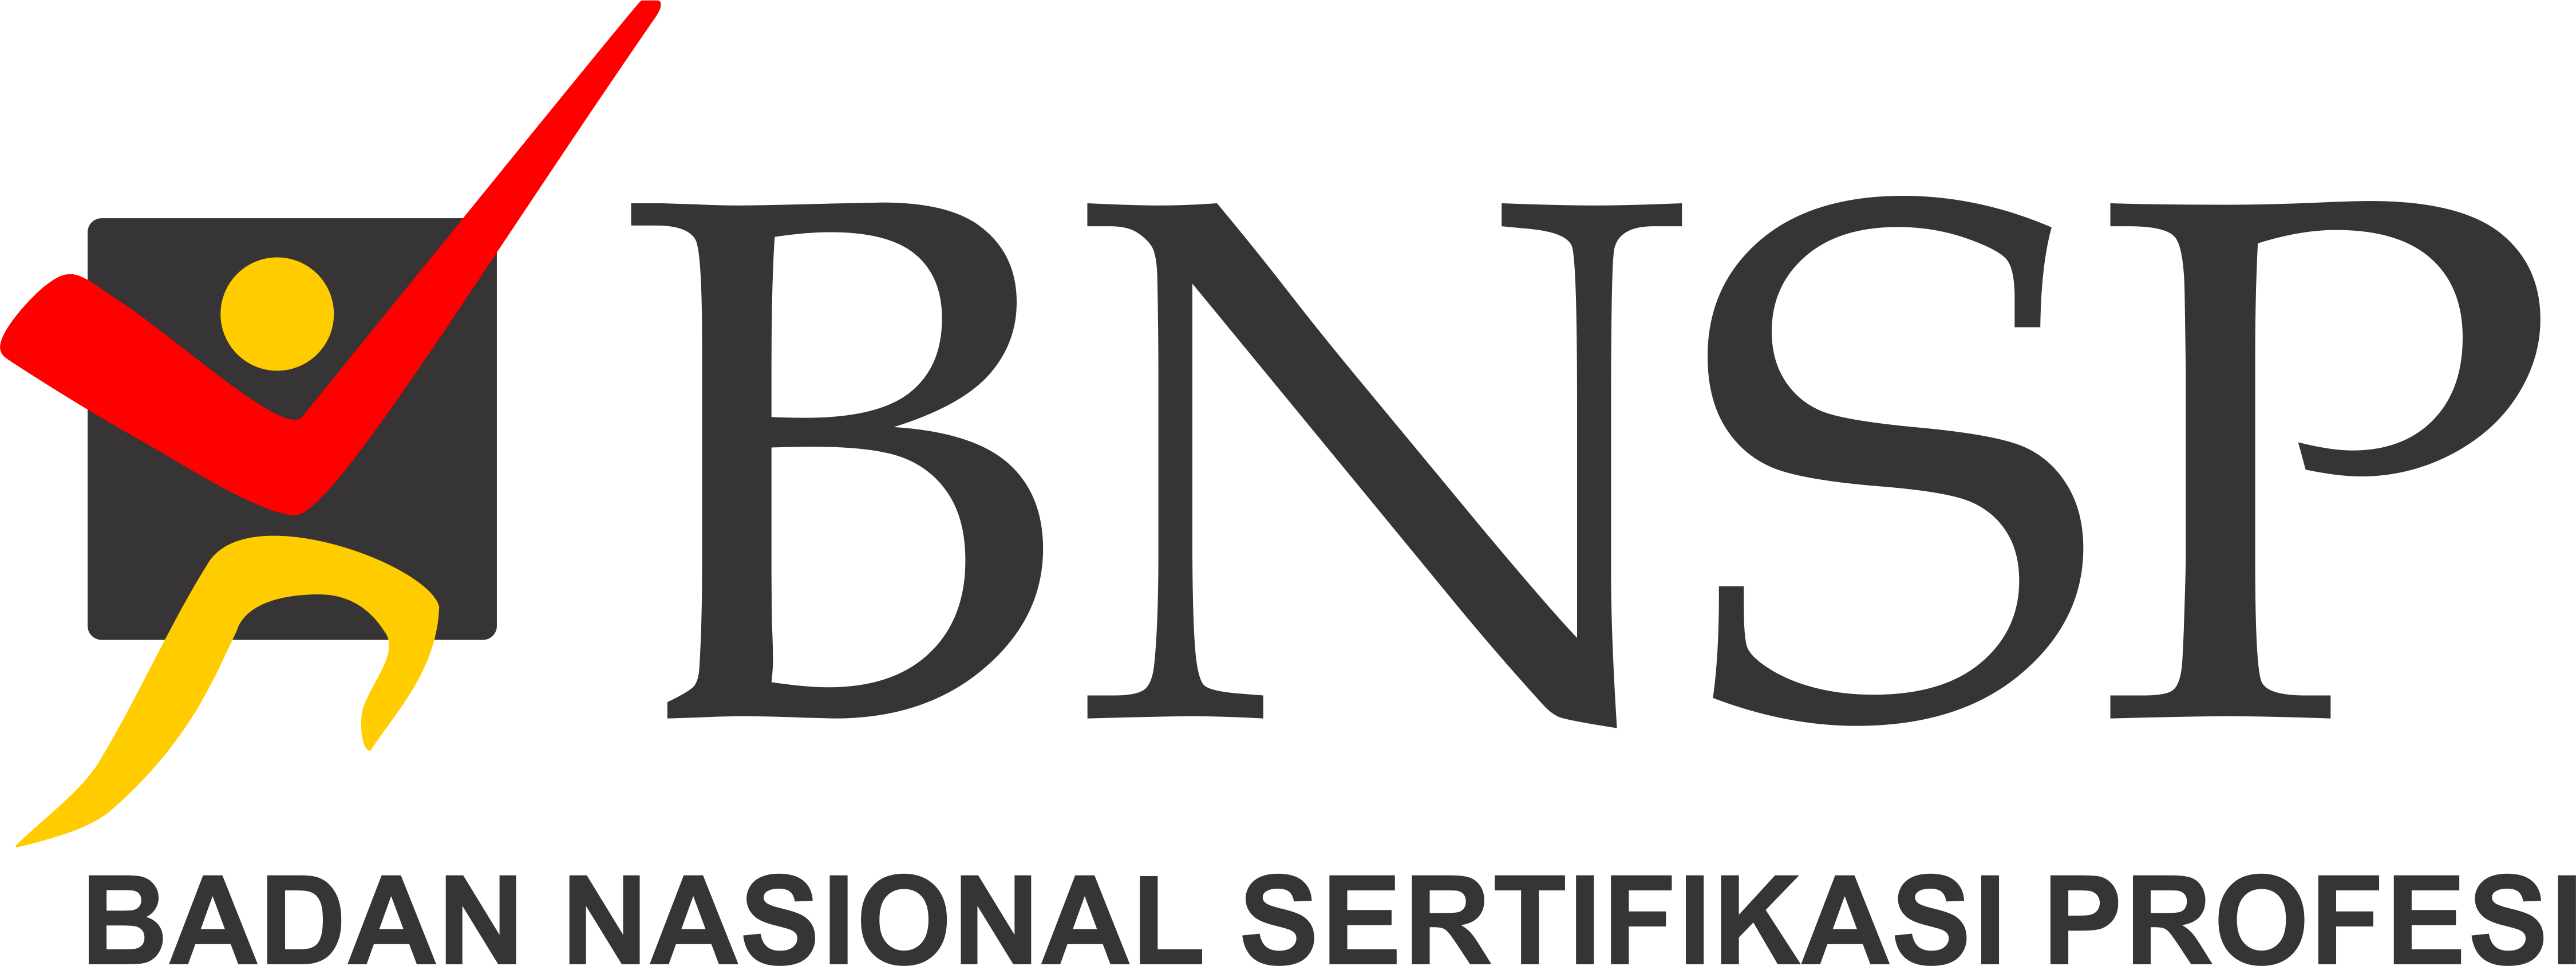 Sertifikat Kompetensi BNSP (Badan Nasional Sertifikasi Profesi)